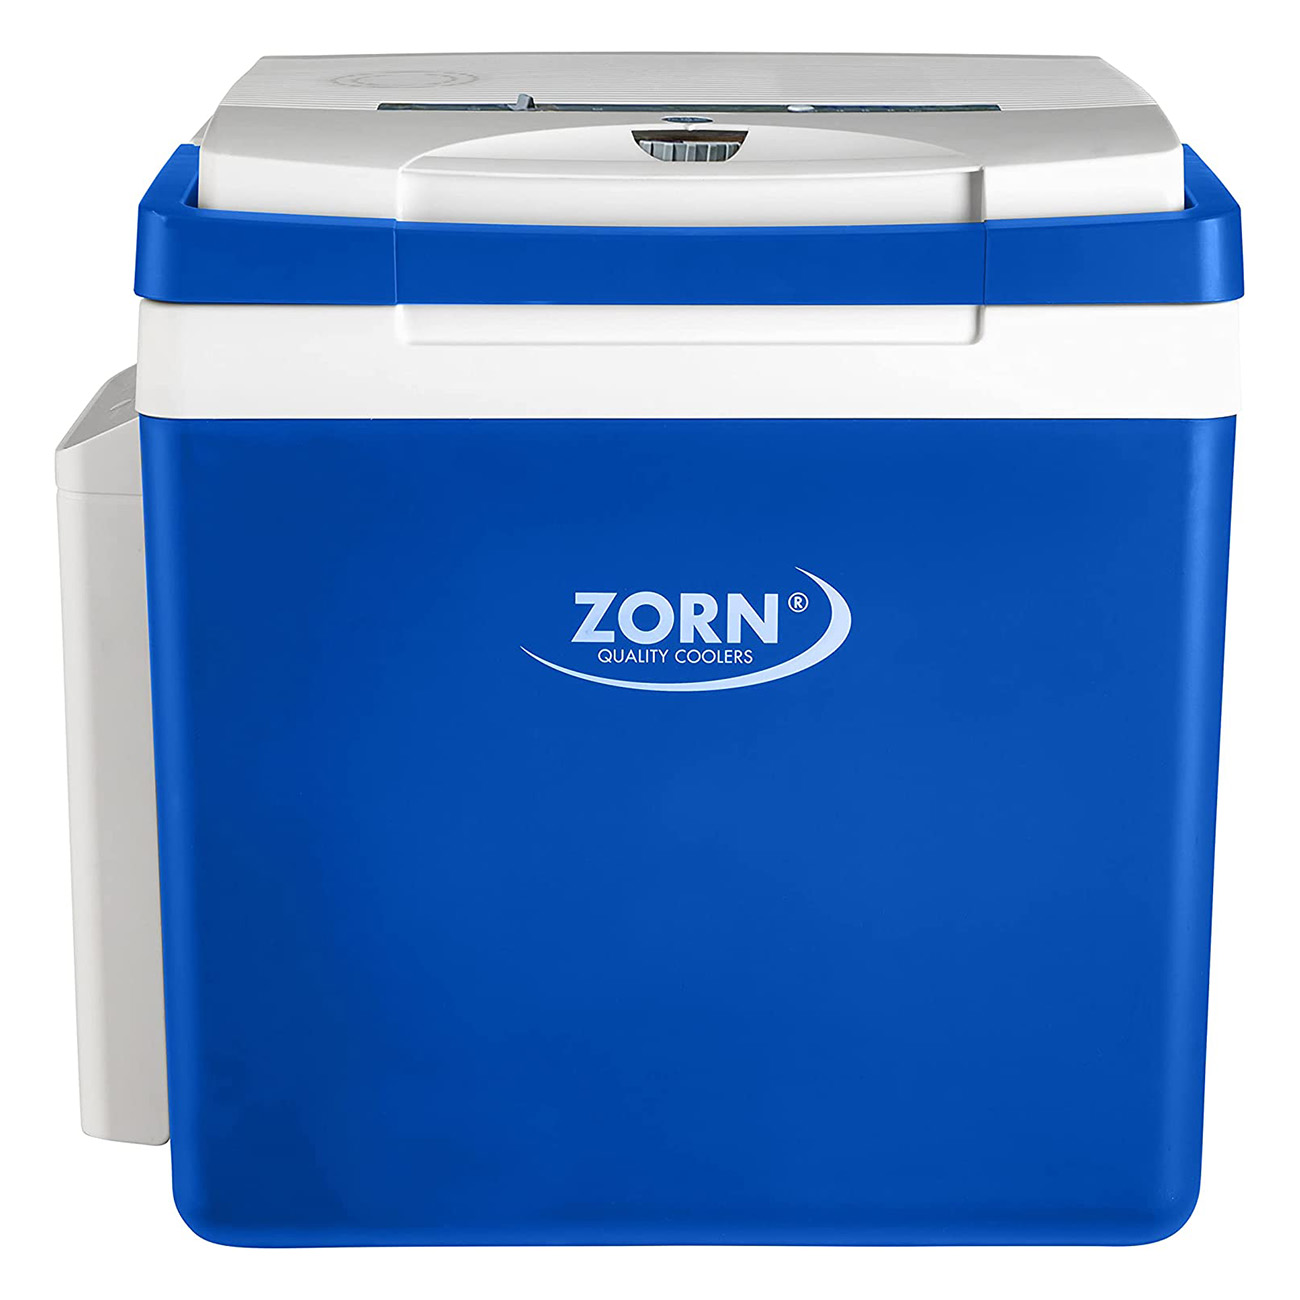 Zorn ZE26 12/230V LNE blau/weiß mit Akku | 25 Litern Fassungsvermögen | 12 V Anschluss | Regulierbare Temperatur | EPS-Isolierung | Mobile Kühlbox | Robust und Stoßfest